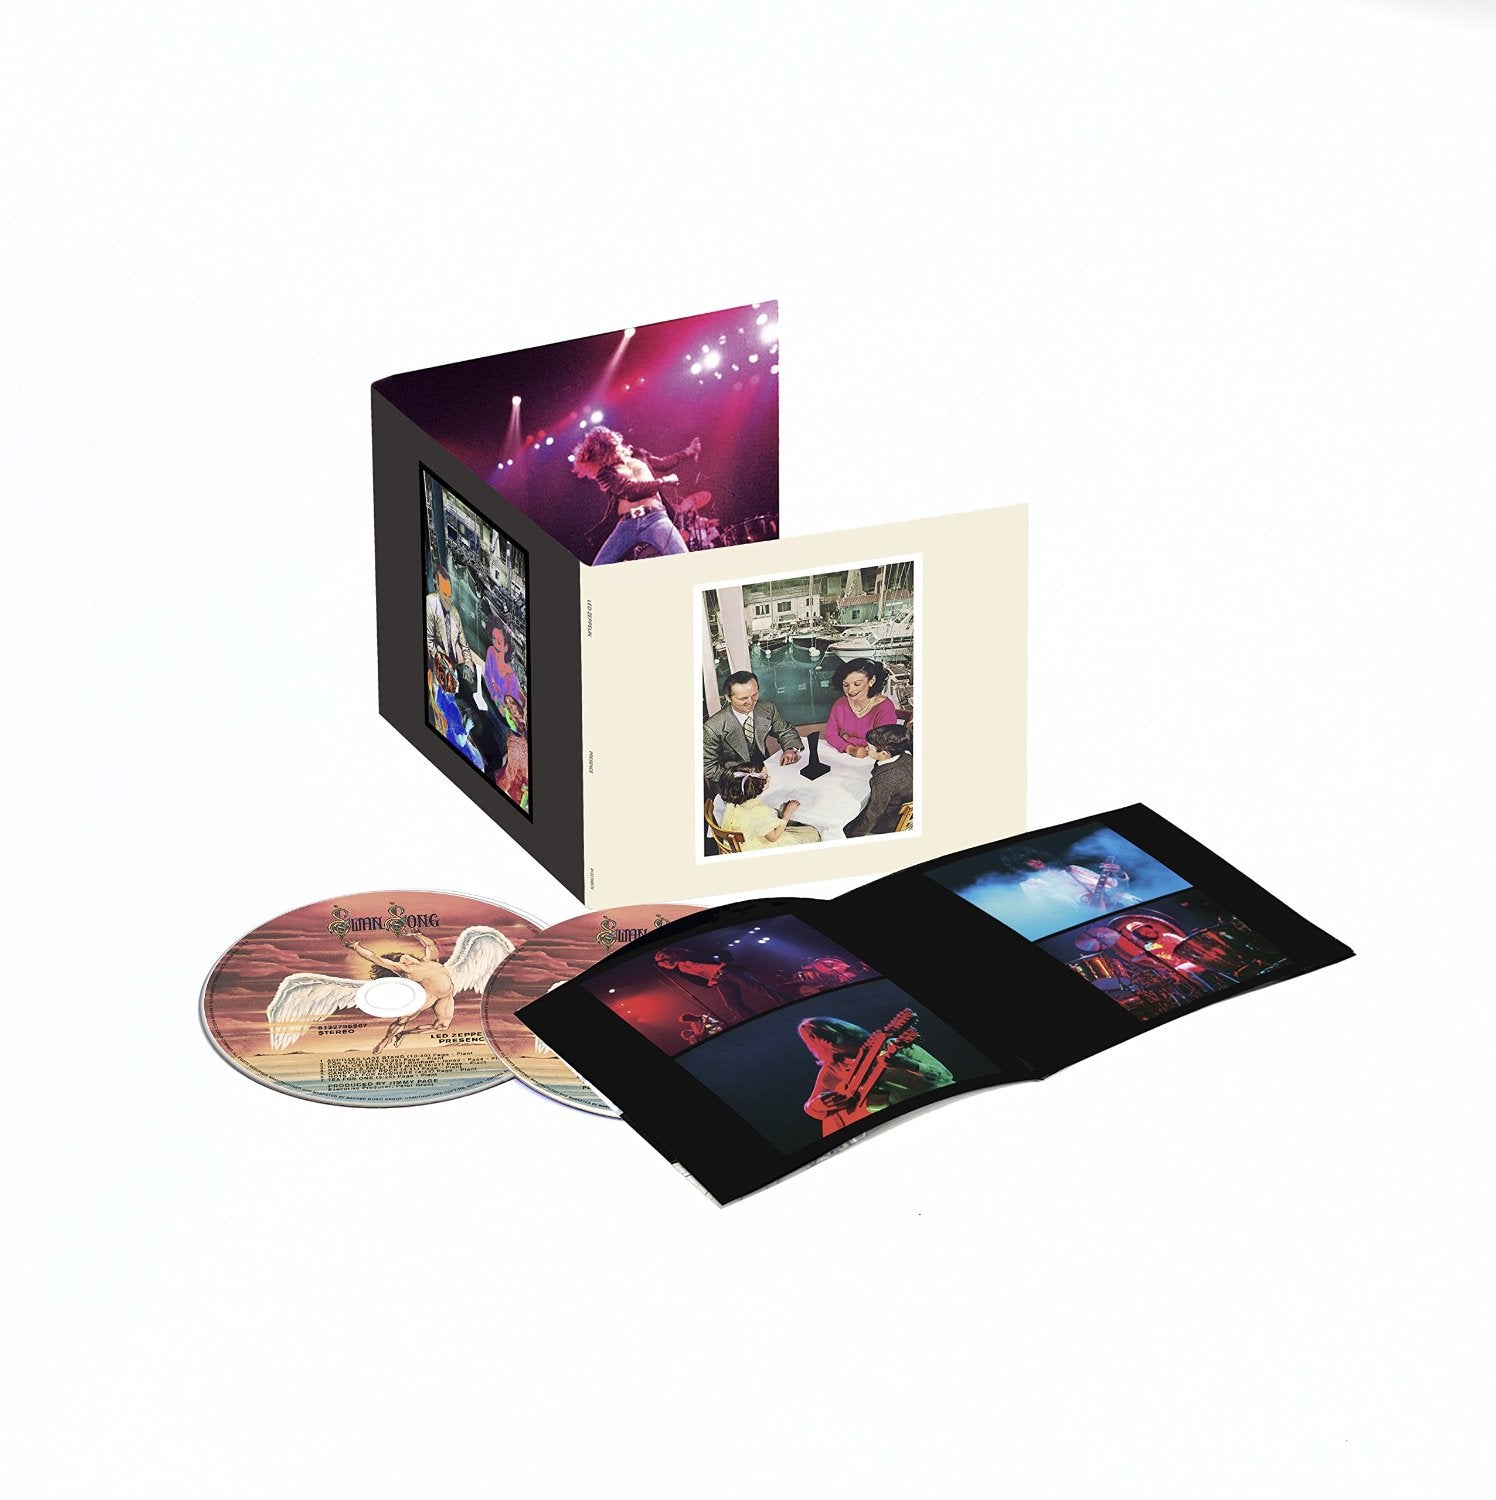 Led Zeppelin "Presence" 2 CD